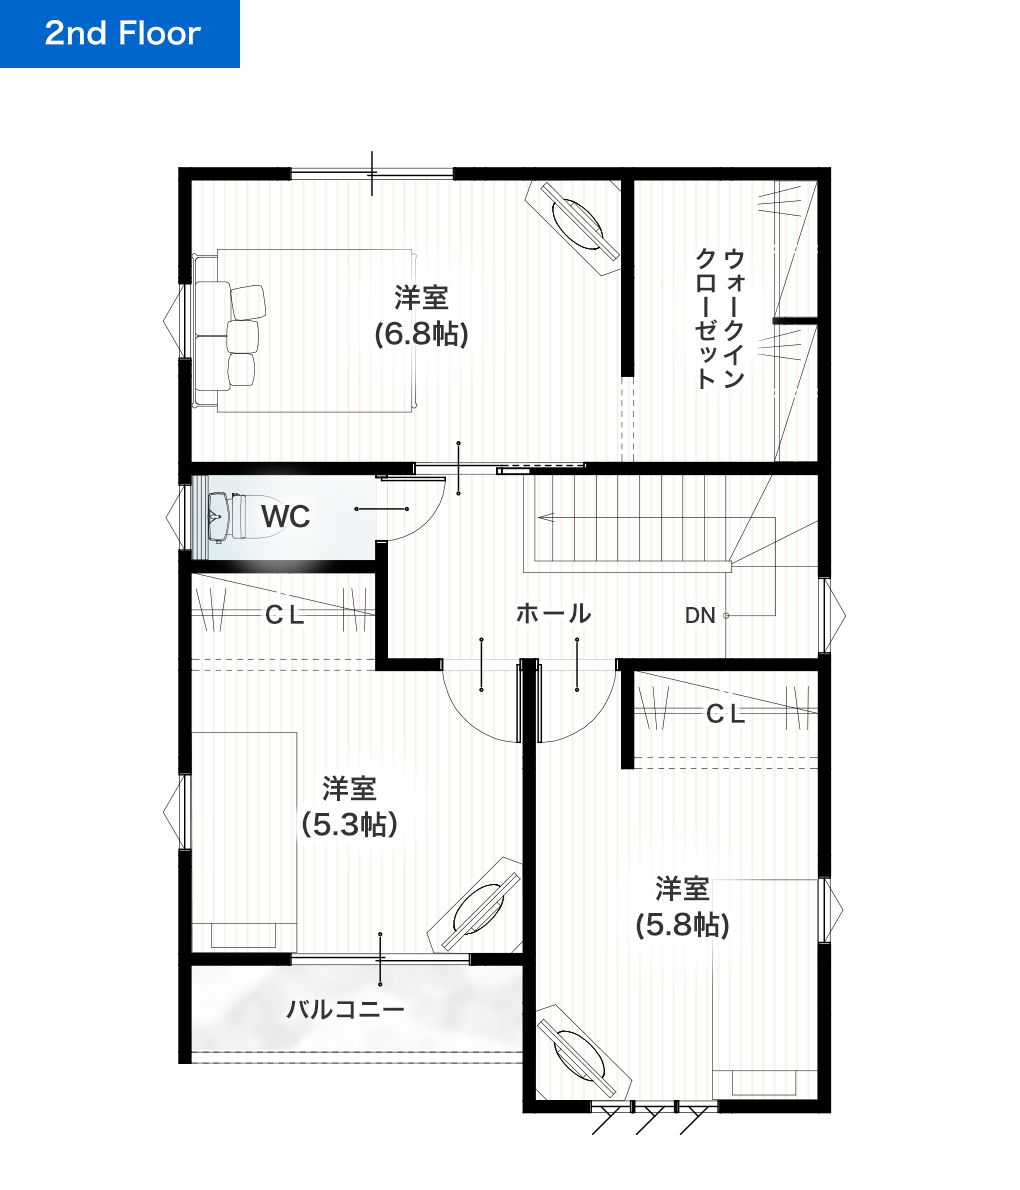 熊本市南区土河原町2期4号地 28坪 4LDK 建売・一戸建ての新築物件 2階間取り図